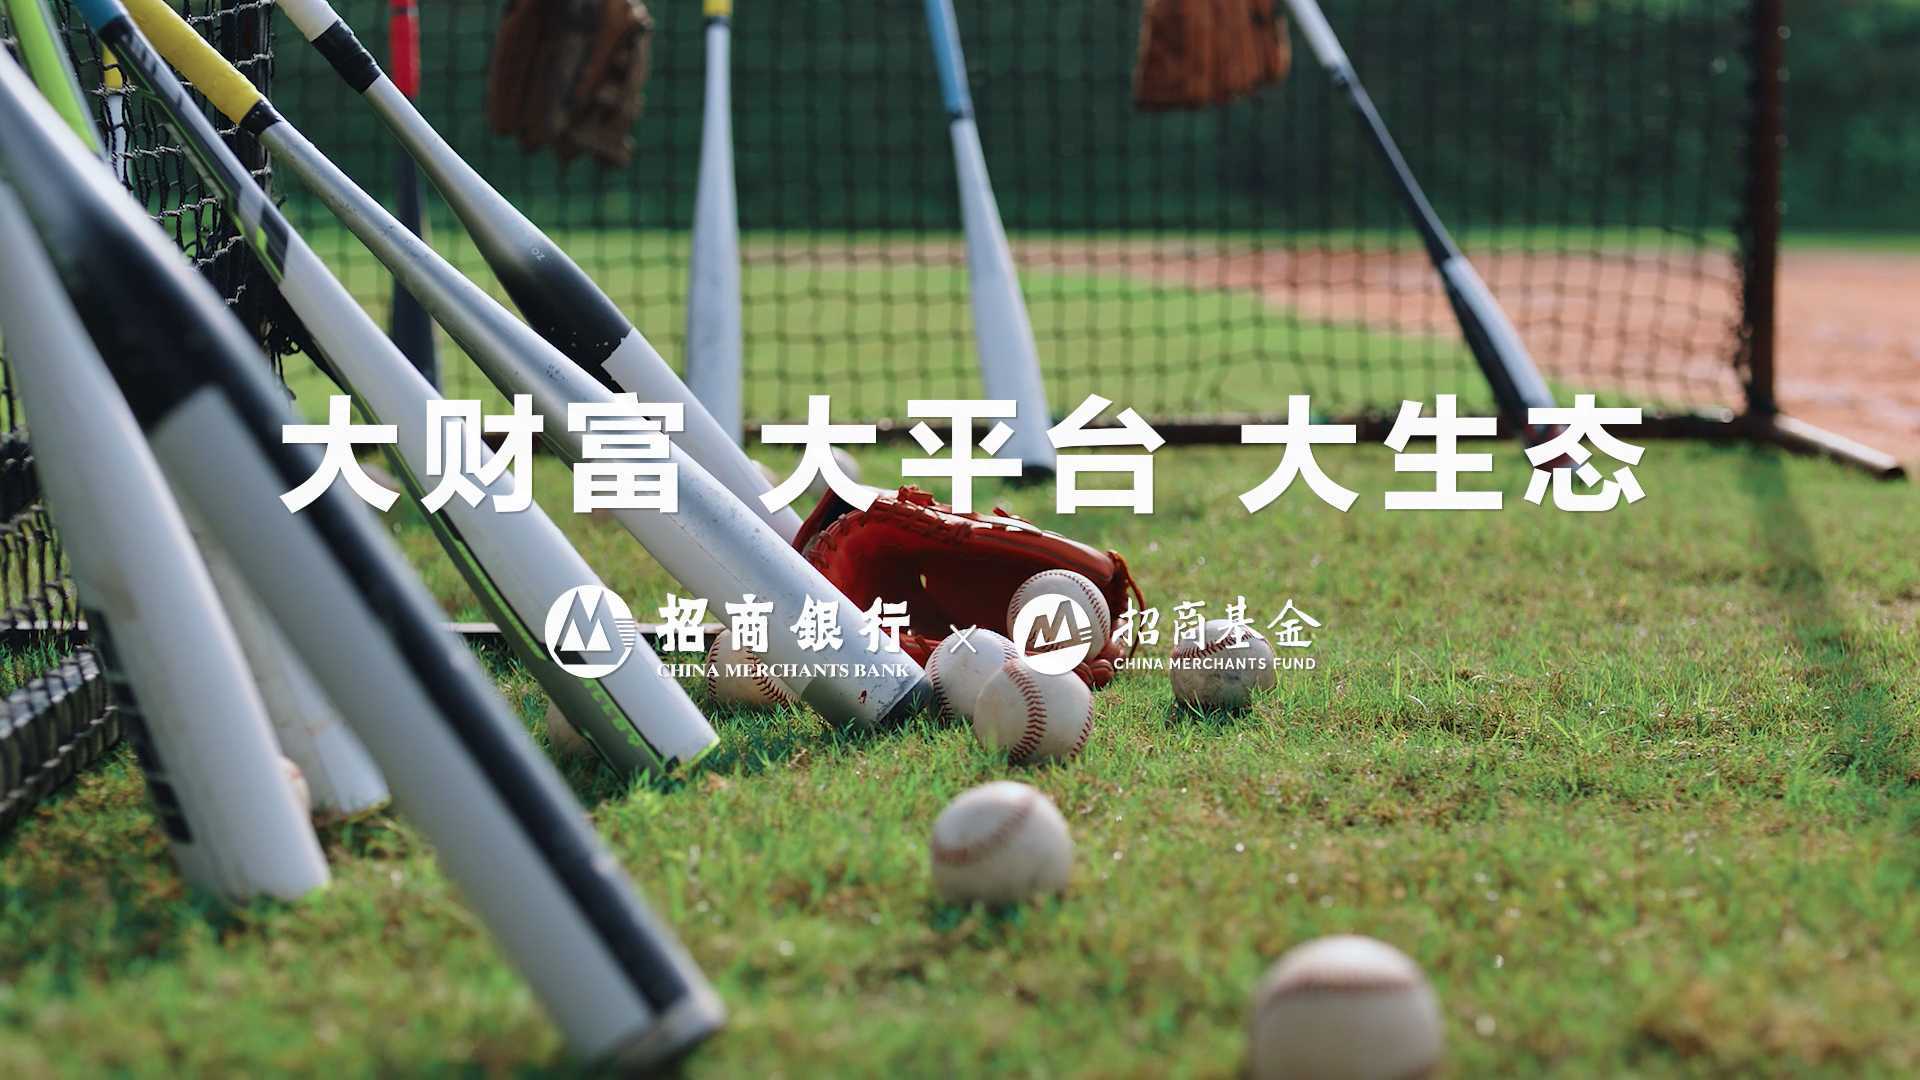 招商银行财富开放平台系列视频《招商基金棒球篇》